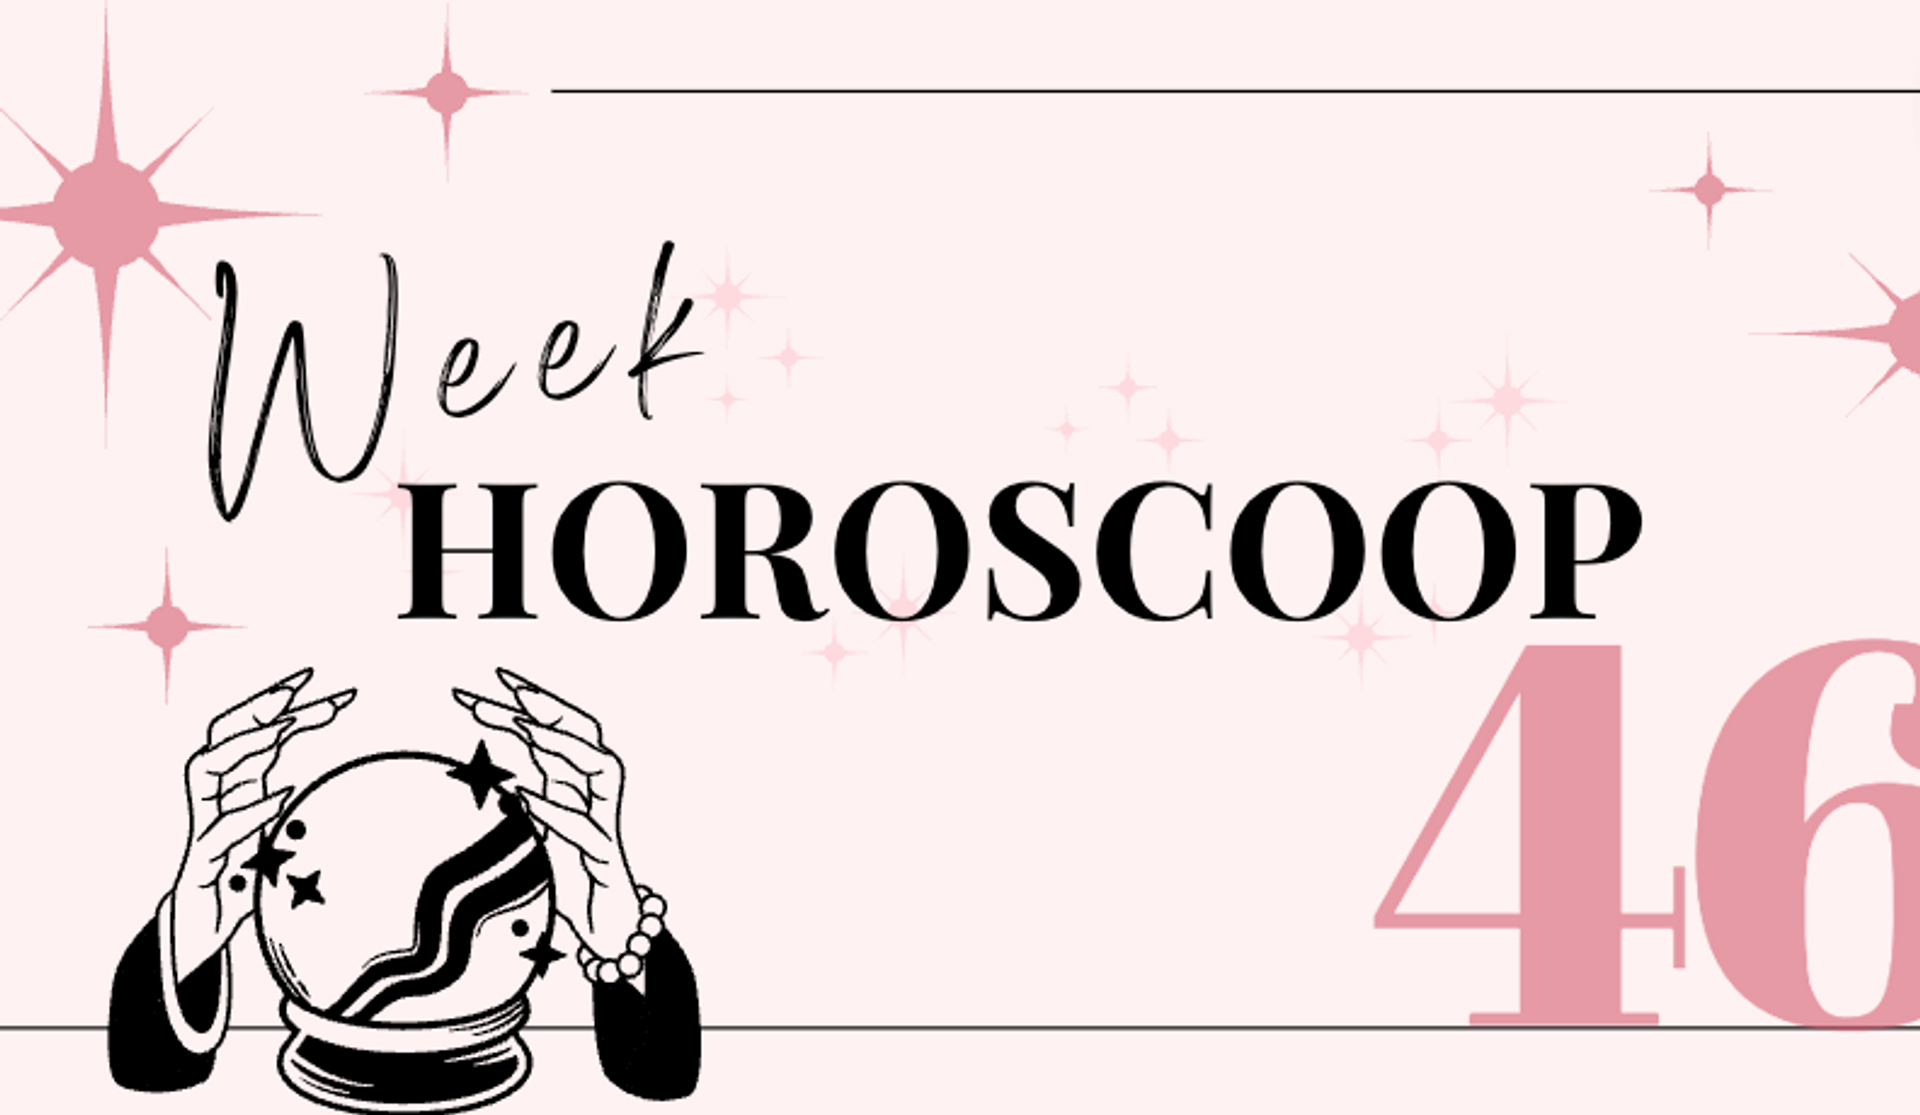 weekhoroscoop-week-46